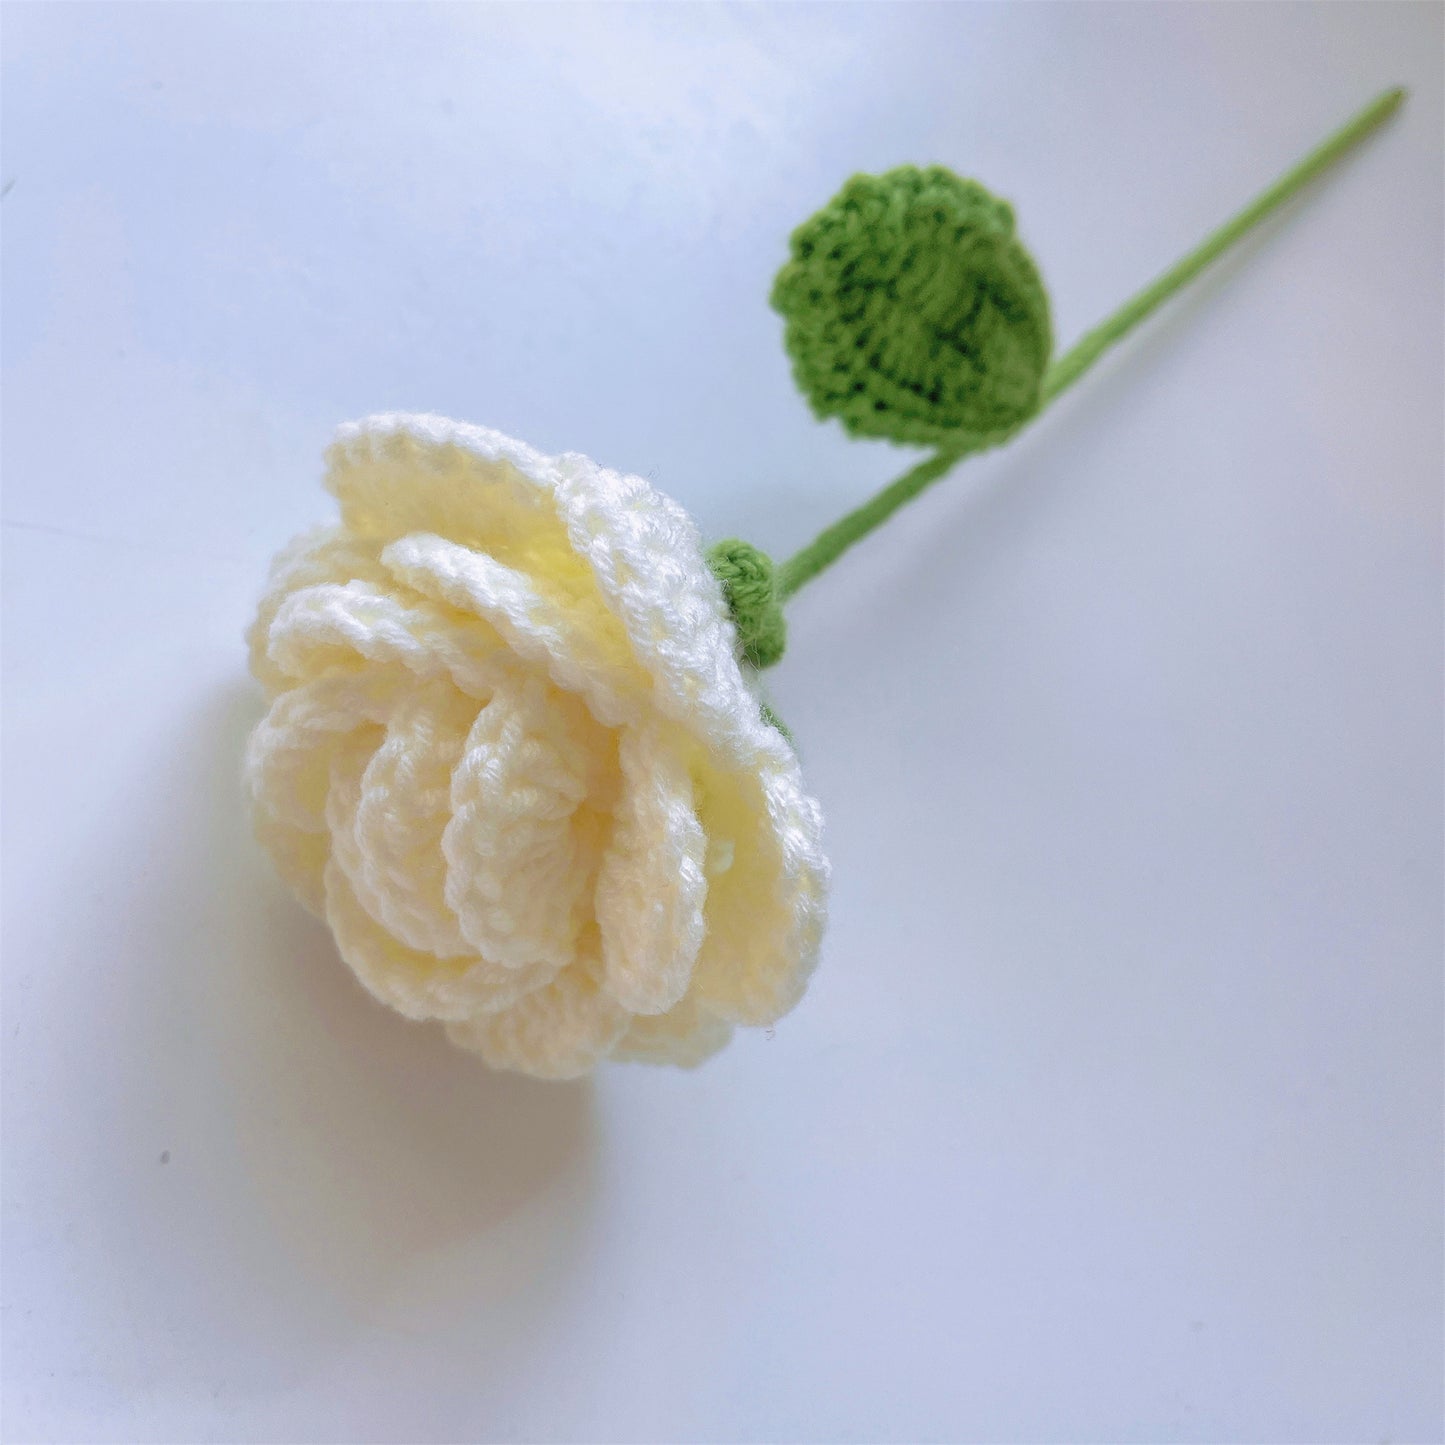 Exquisiter handgefertigter Häkelstrauß aus 9 umgedrehten Rosen – perfekt für Geburtstag, Jahrestag, Geschenk für Sie, Hochzeitsgeschenke, Valentinstag oder jeden individuellen Anlass